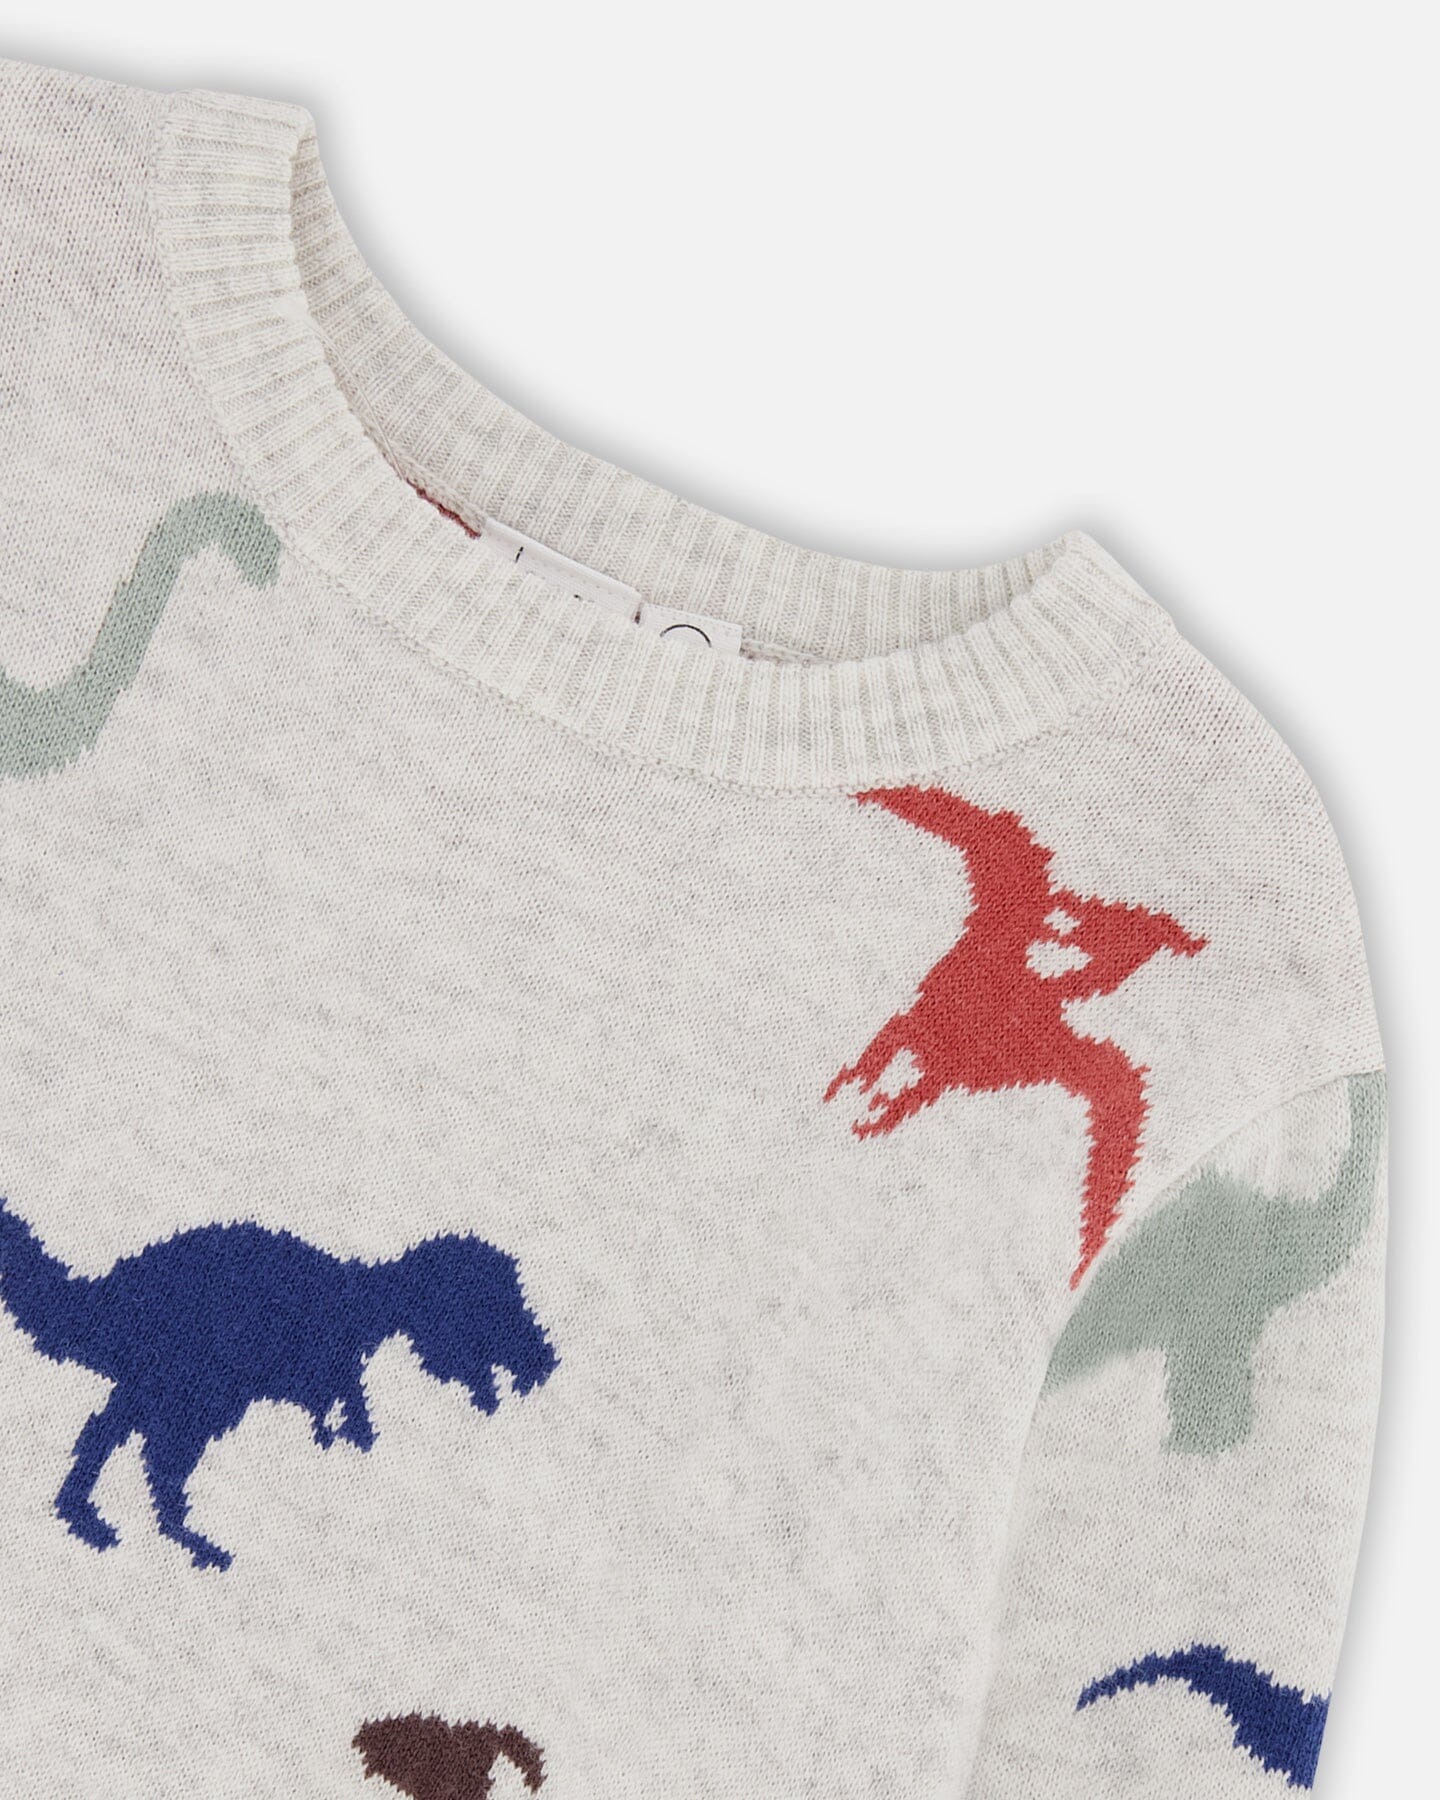 deux par deux Intarsia Sweater w/ Dinosaurs - 3T